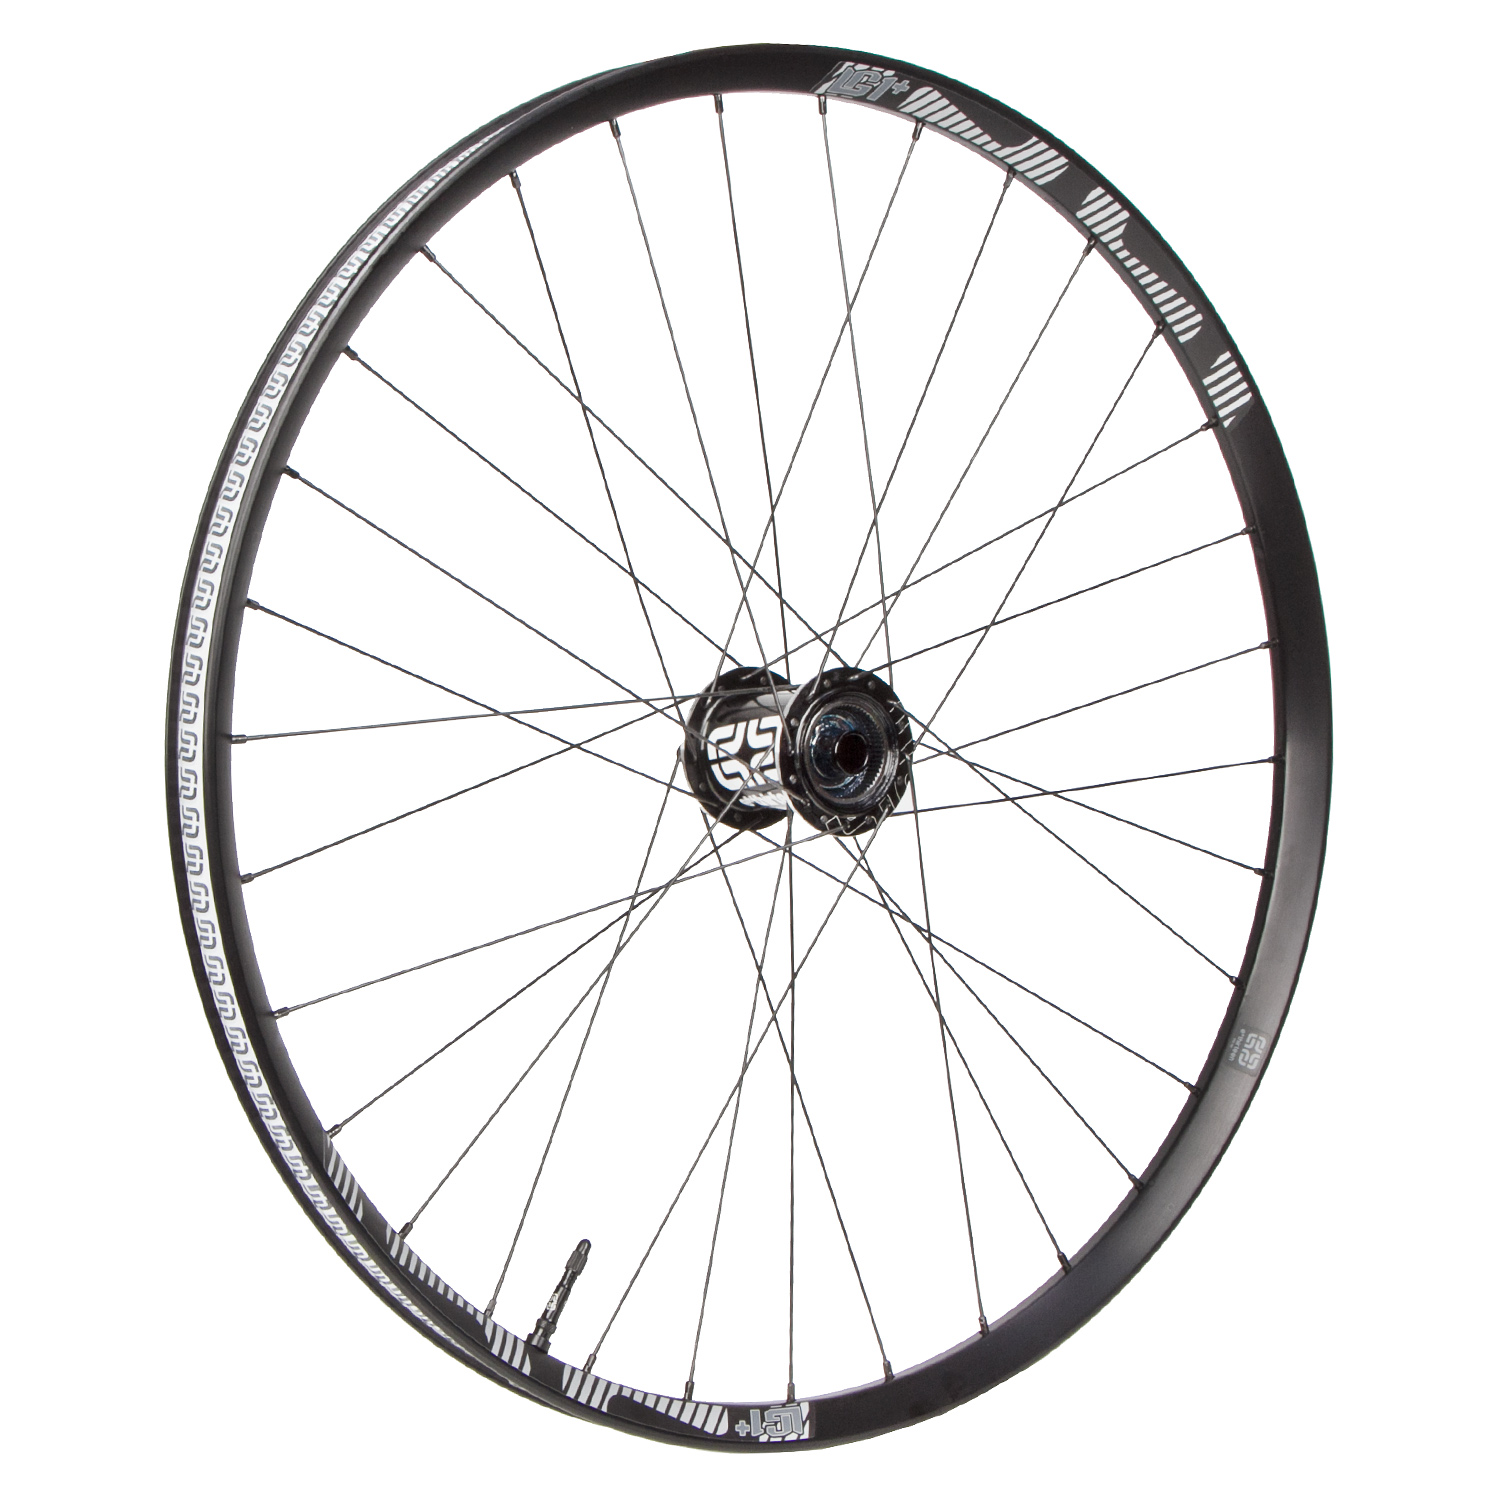 E*thirteen Wheel LG1+ Rear, 27.5 Inches, 12x150-157 mm TA